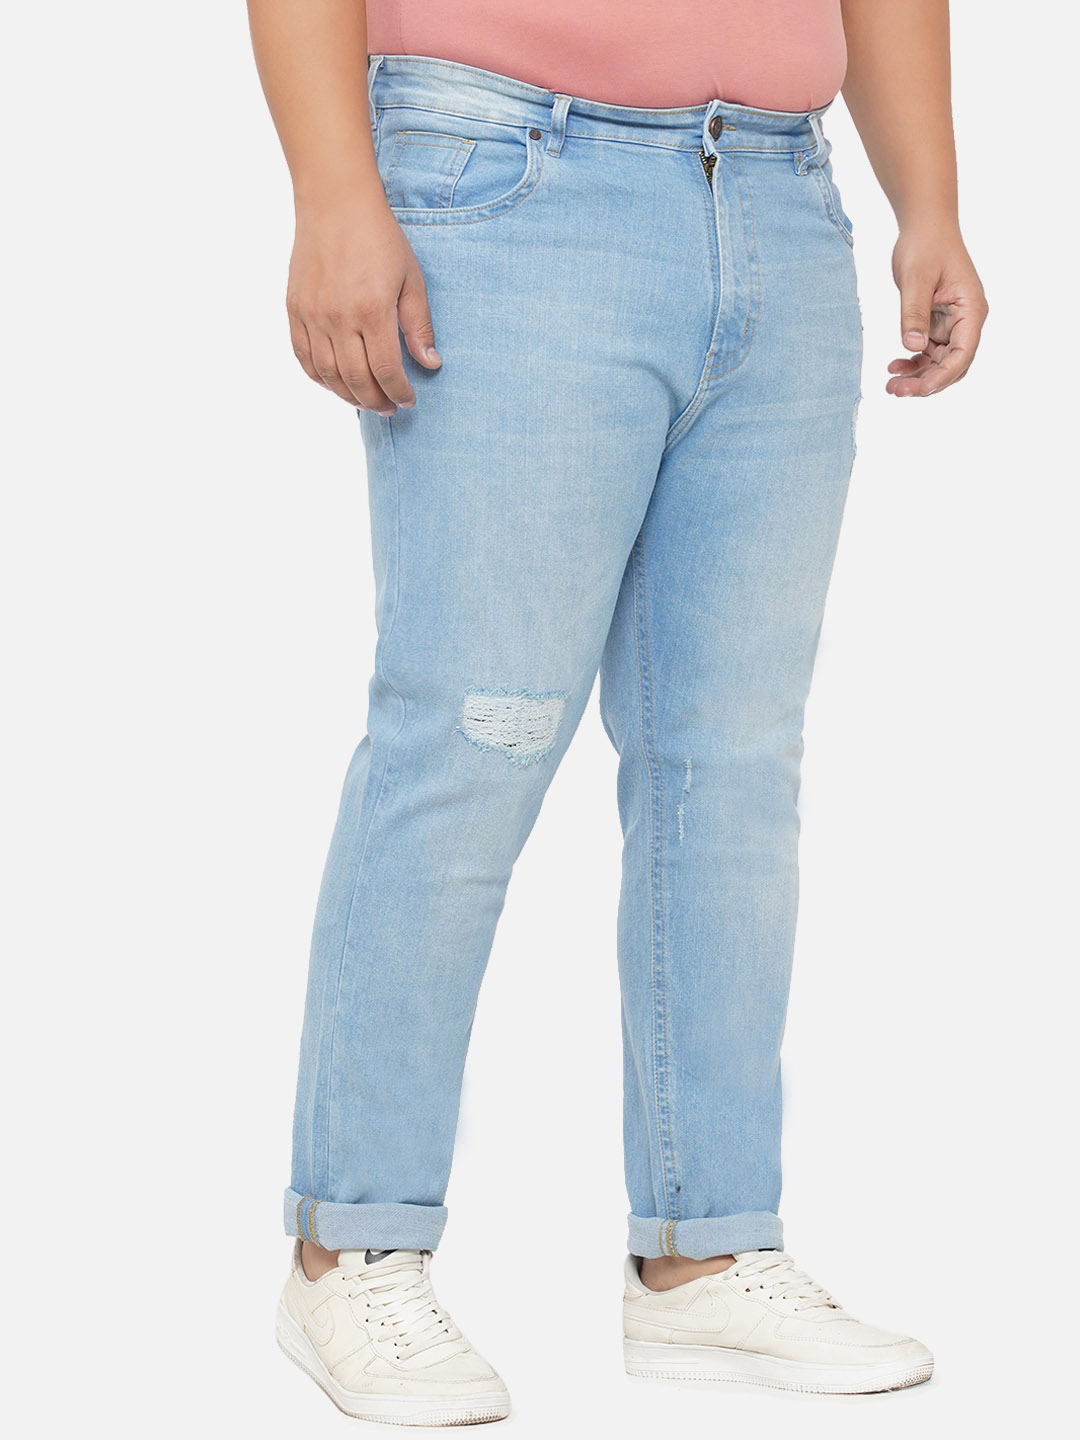 bottomwear/jeans/EJPJ25070/ejpj25070-3.jpg